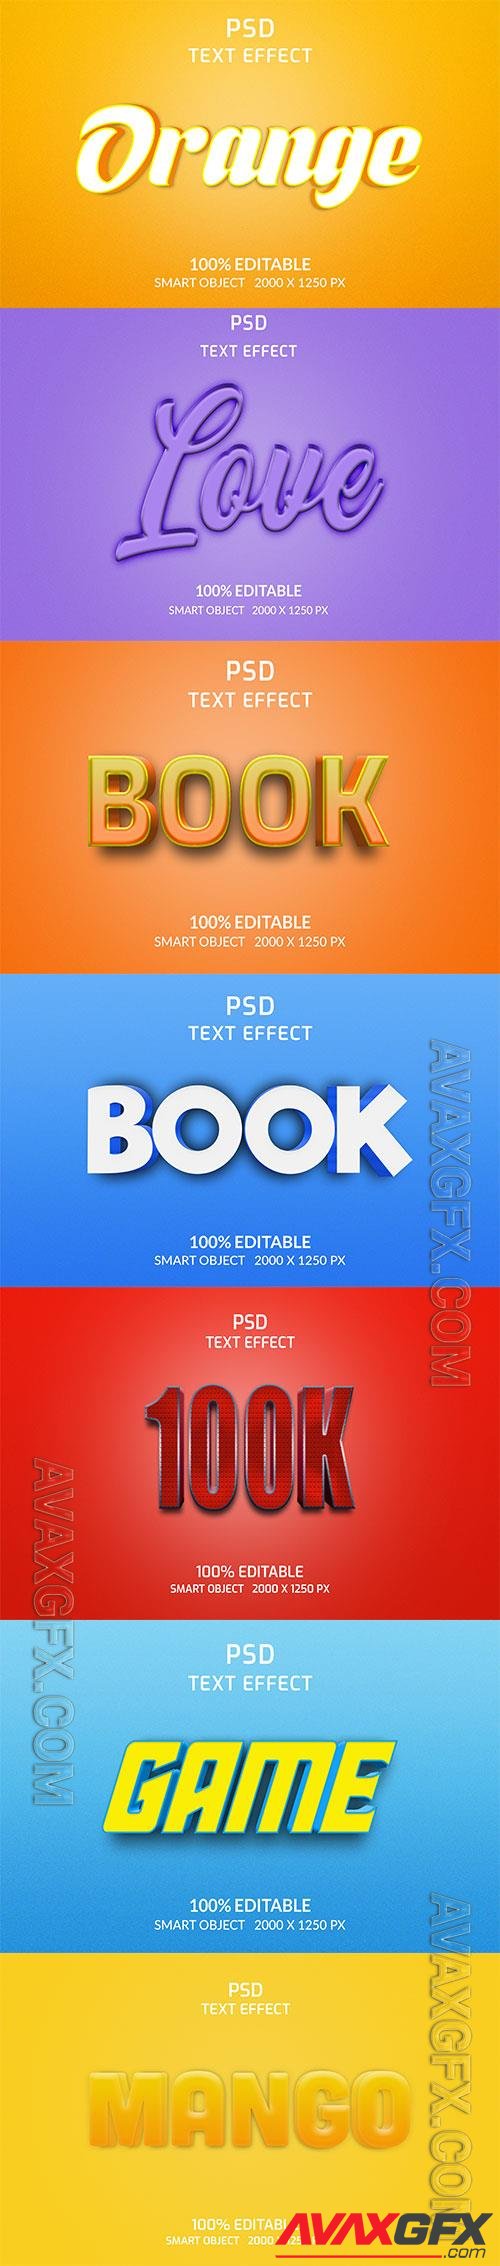 Psd text effect set vol 166